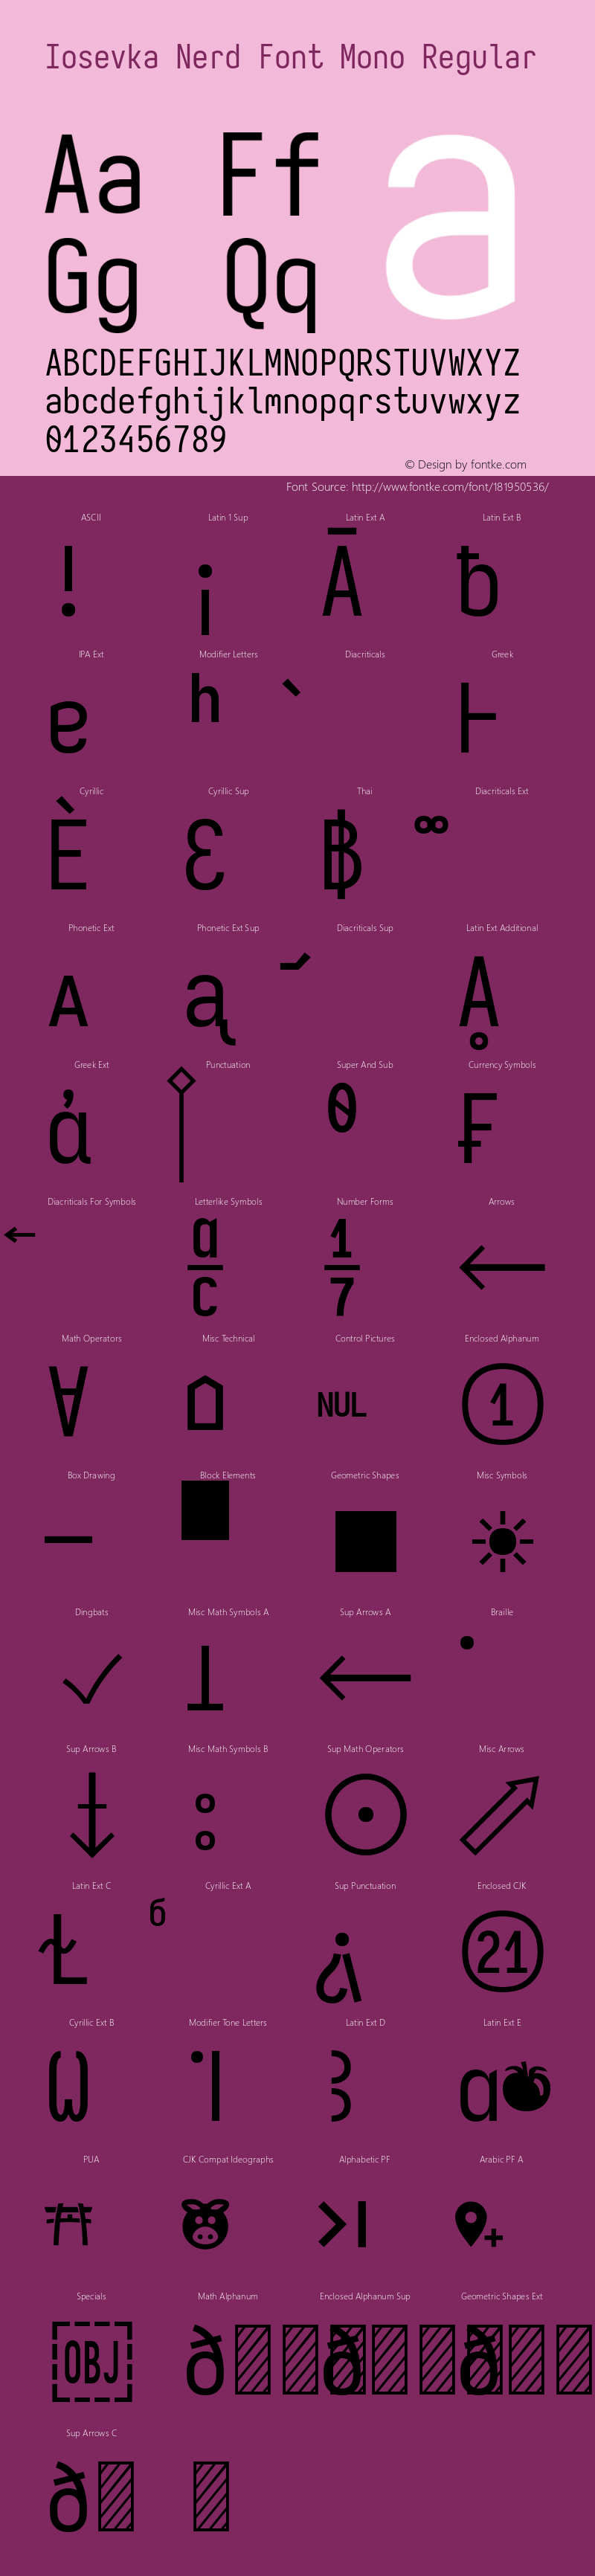 Iosevka Mayukai Serif Nerd Font Complete Mono Version 10.3.4; ttfautohint (v1.8.4)图片样张